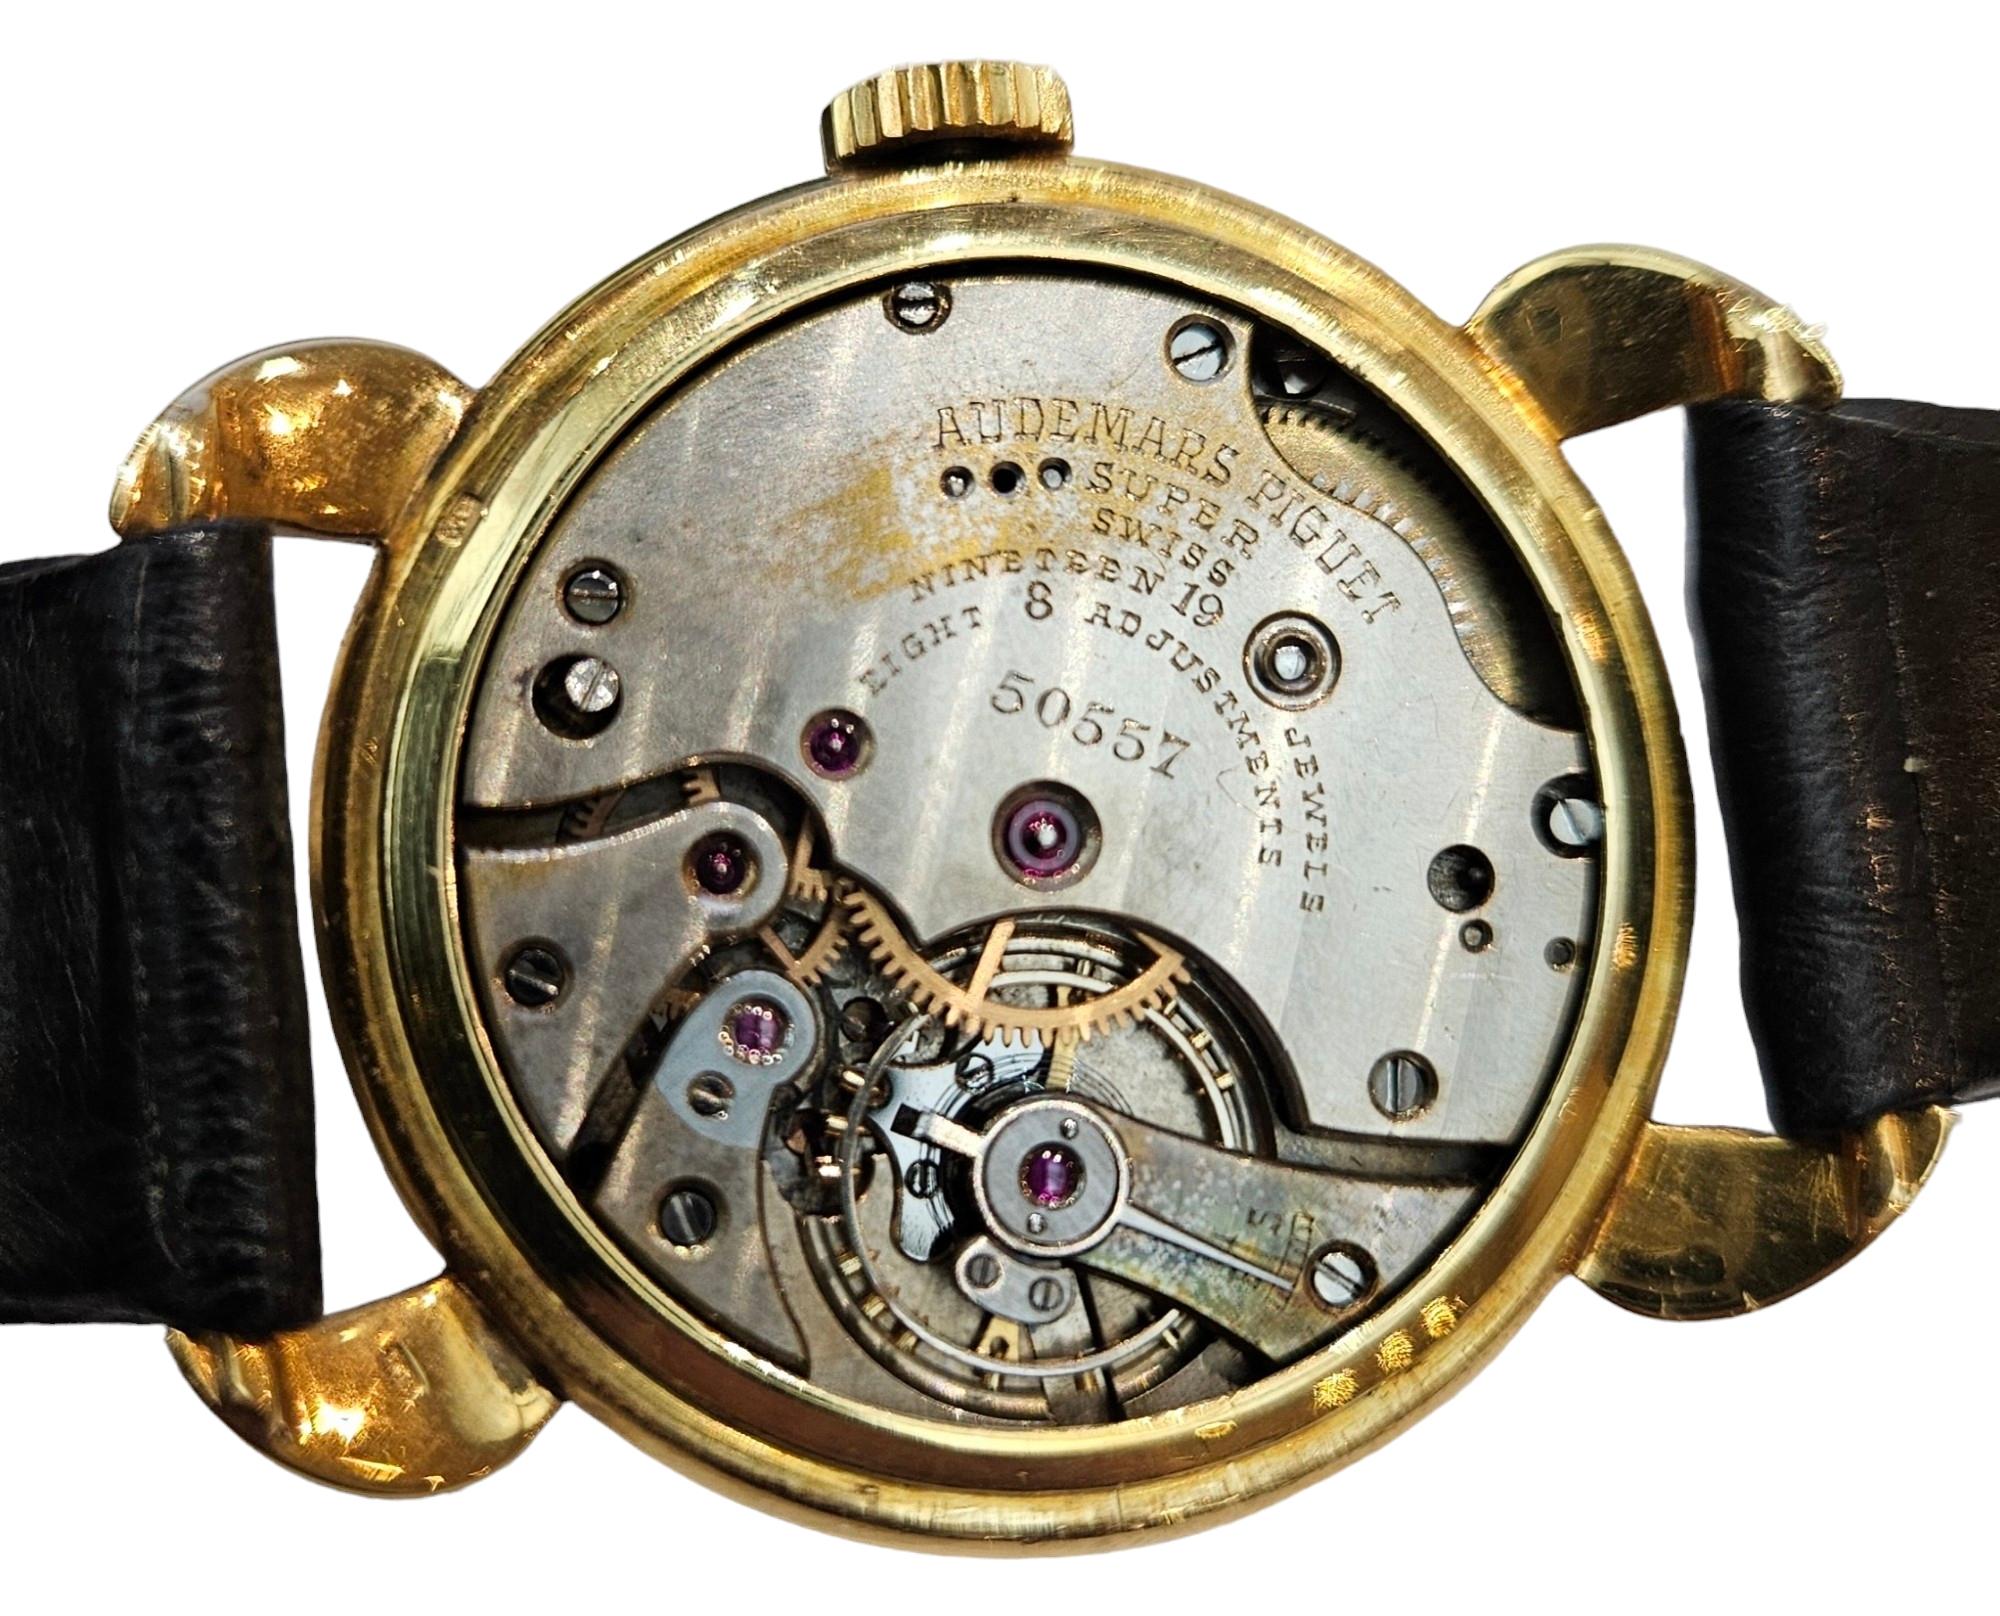 18 Kt Gold Audemars Piguet Calatrava Vintage Rare Collectors Wrist Watch 1940's For Sale 7